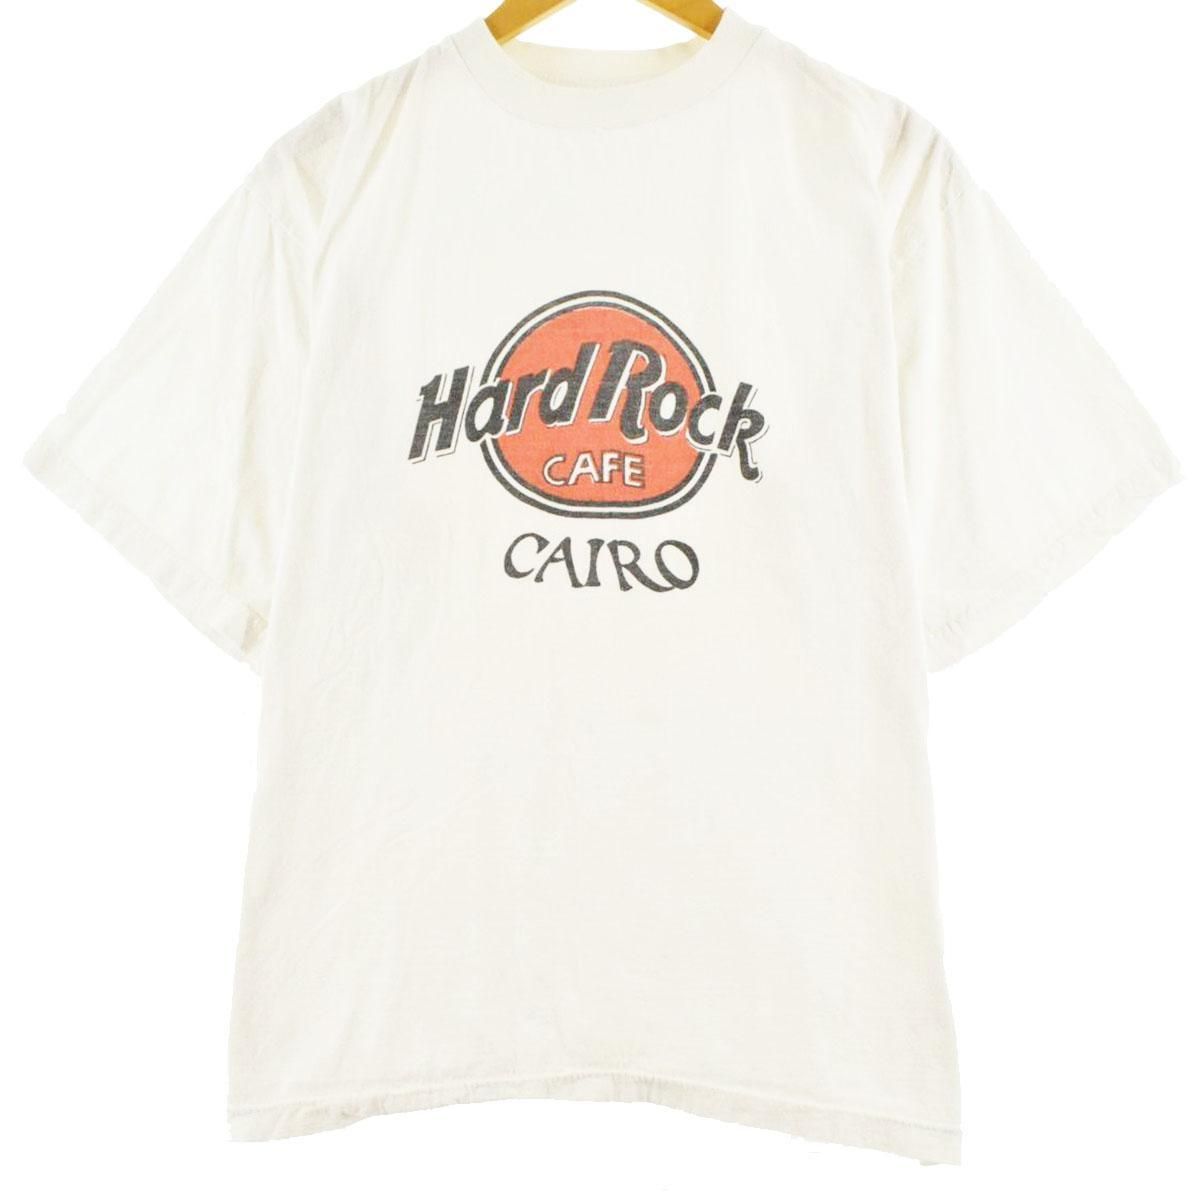 ハードロックカフェ HARD ROCK CAFE NEW YORK アドバタイジングTシャツ メンズXL /eaa313582